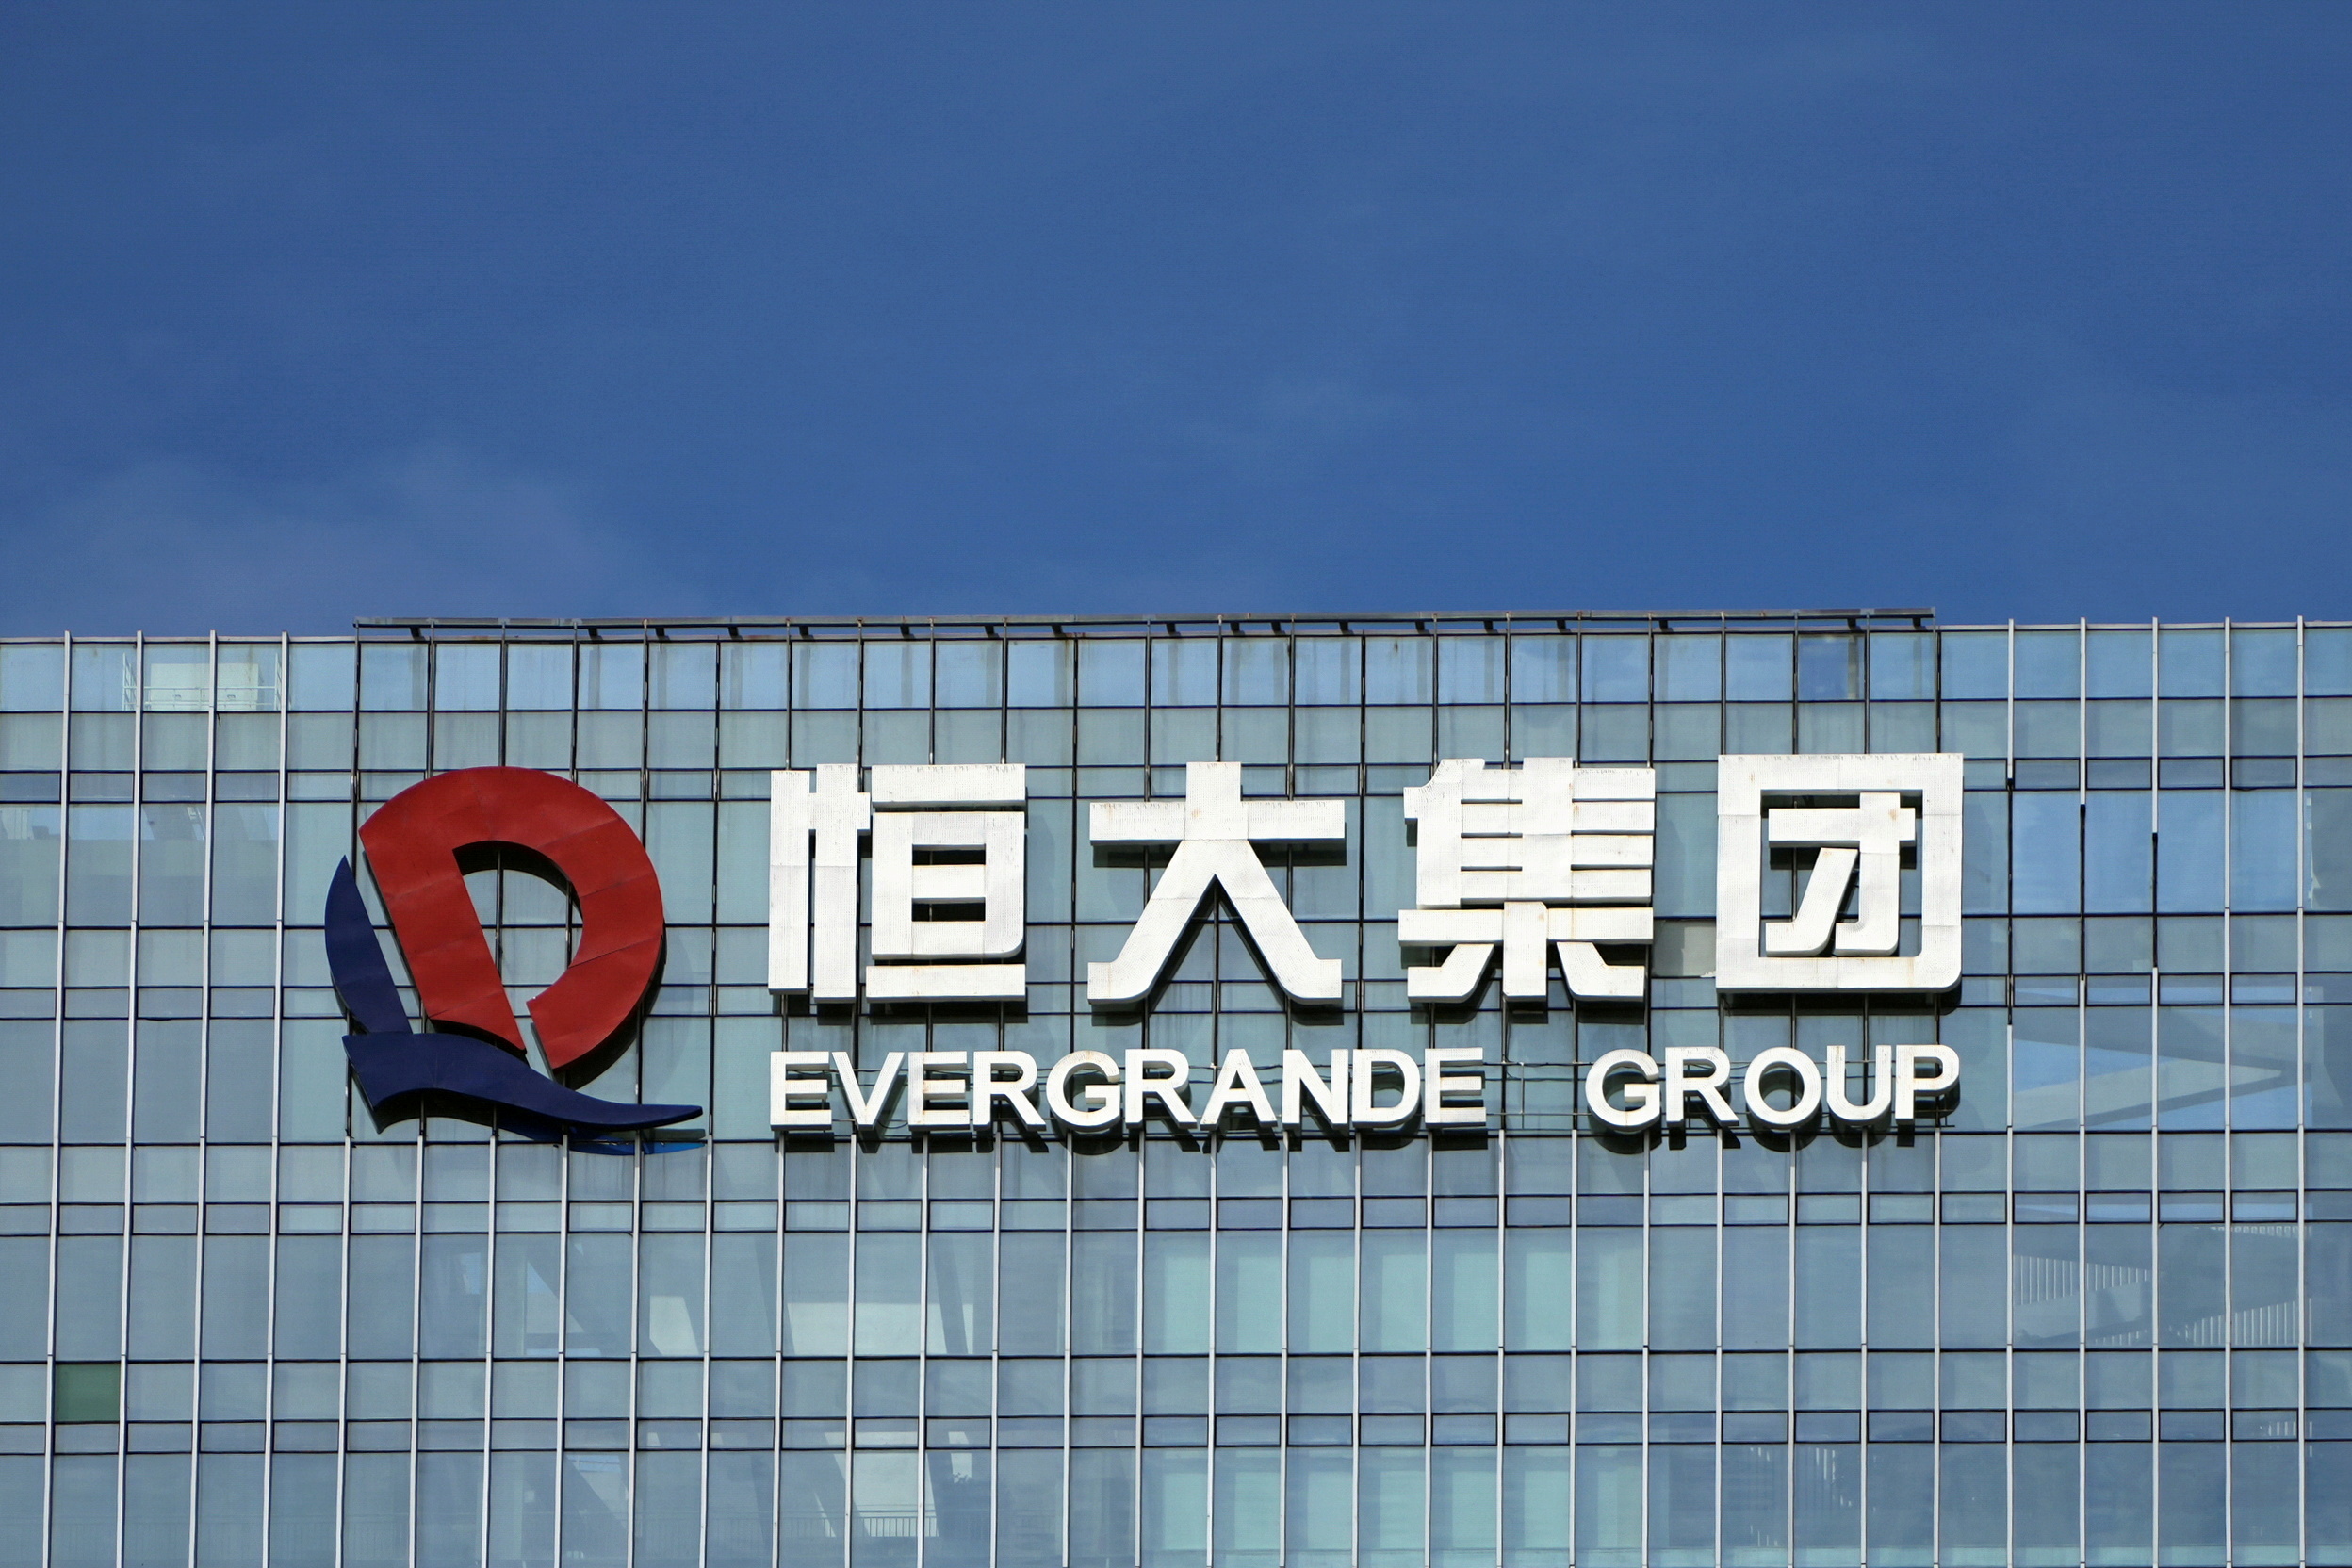 Le groupe chinois Evergrande évite un défaut de paiement